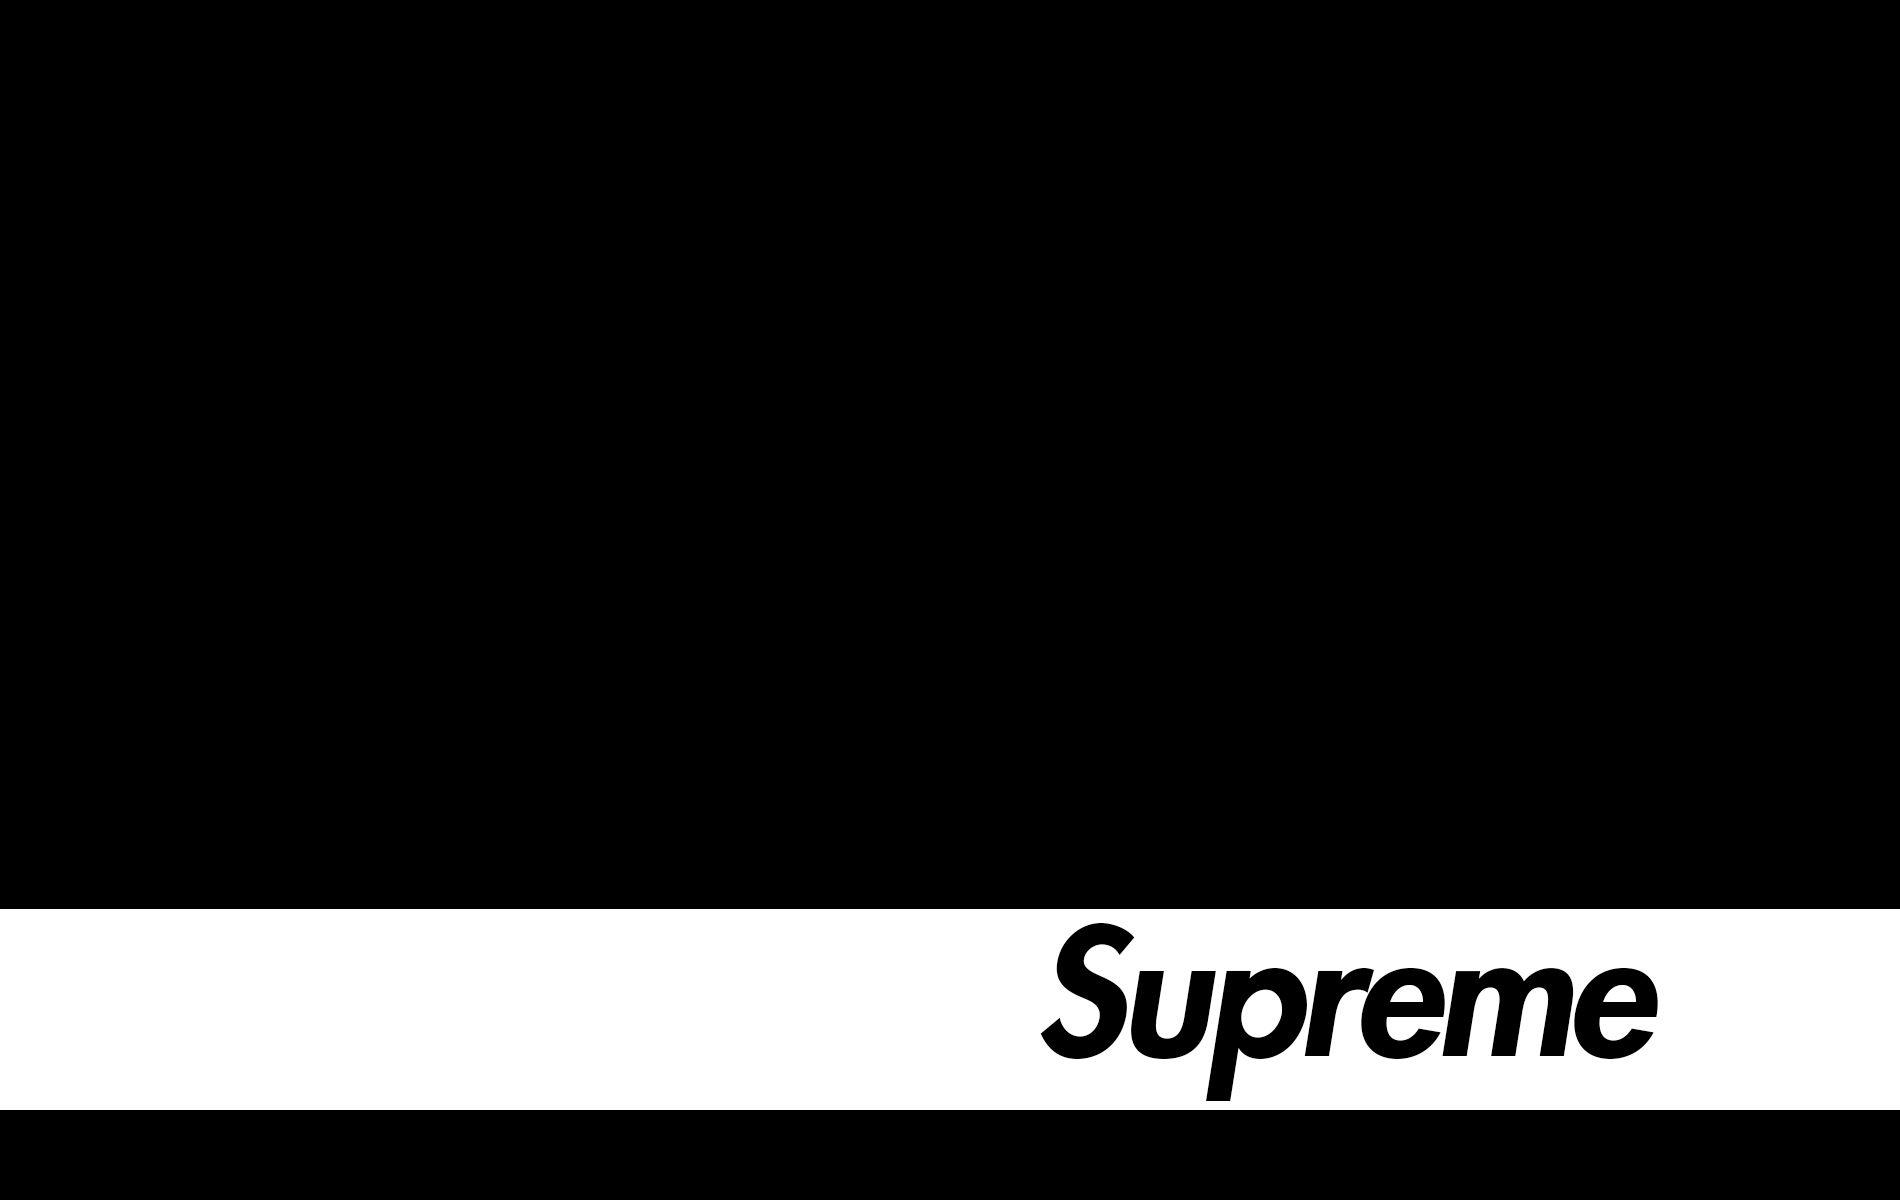 Download Black Supreme Classic White Logo Wallpaper